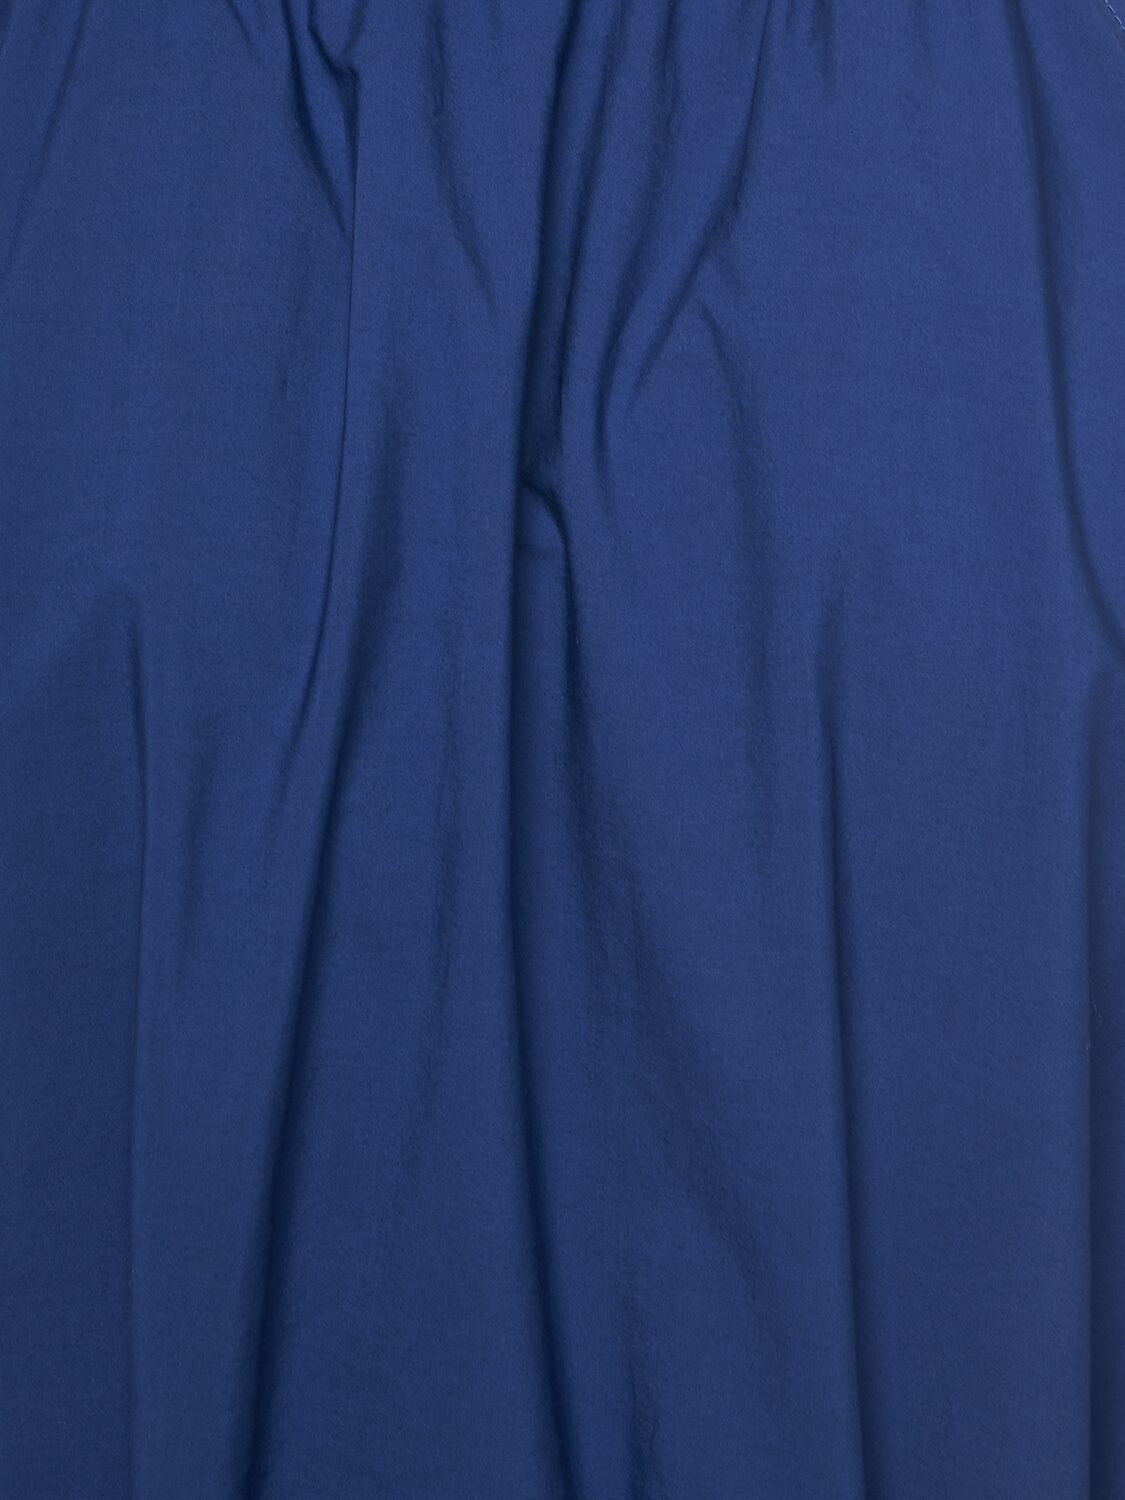 Shop Weekend Max Mara Fidato Belted Cotton Poplin Long Dress In Blue,purple